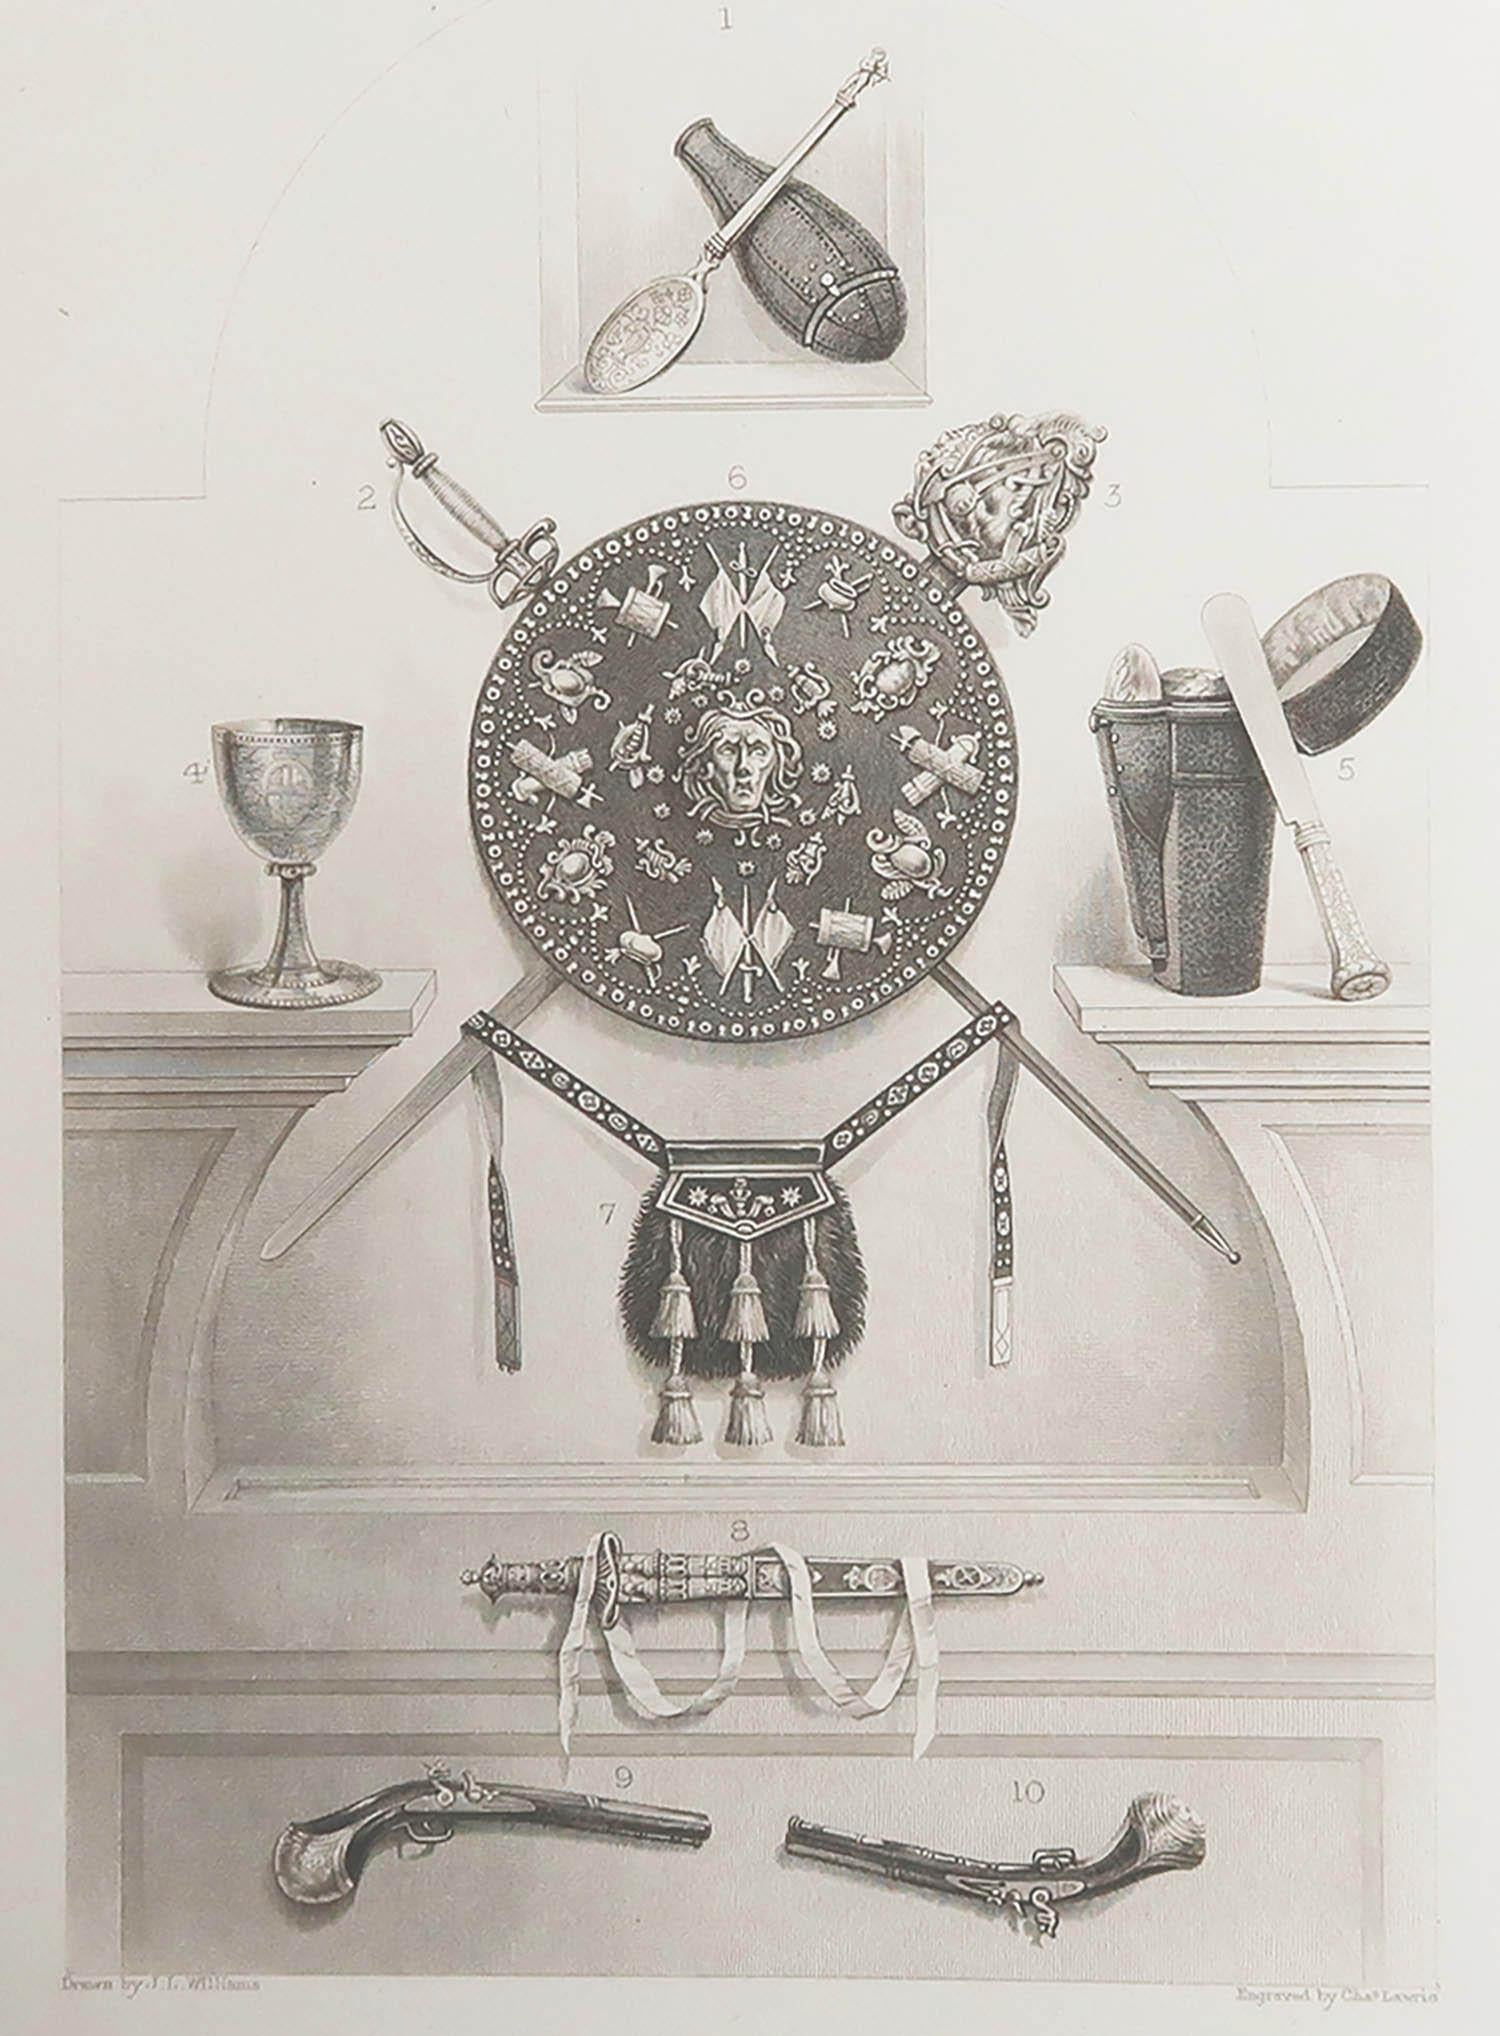 Großes Bild der Reliquien von Charles Edward Stuart, Bonnie Prince Charlie

Feiner Stahlstich von Charles Lawrie

Veröffentlicht von Blackie, Edinburgh,CIRCA 1880

Ungerahmt.